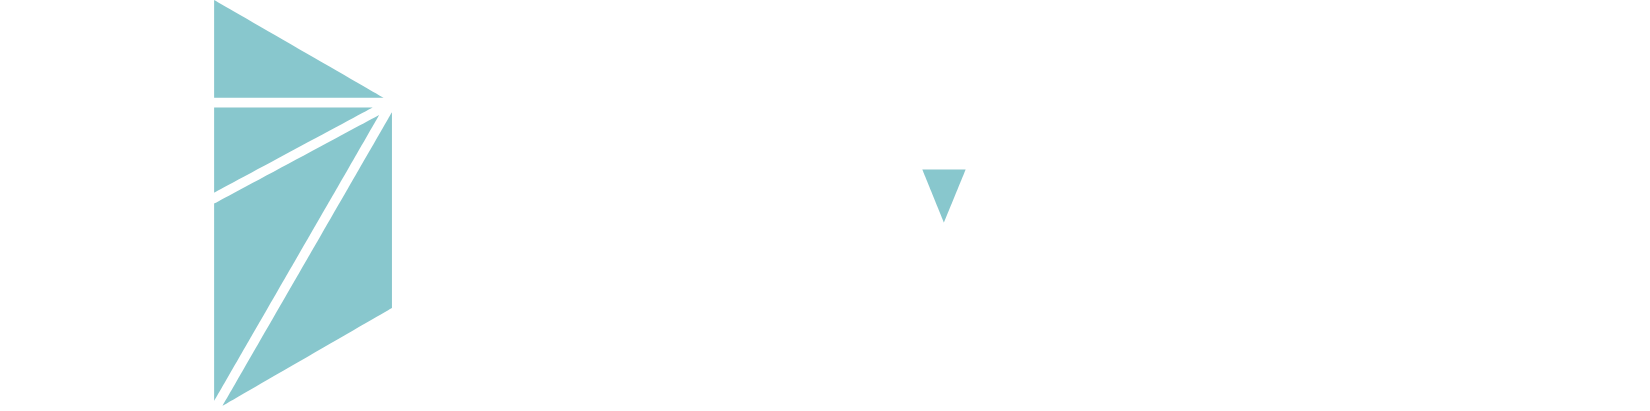 Nuvalent logo large for dark backgrounds (transparent PNG)